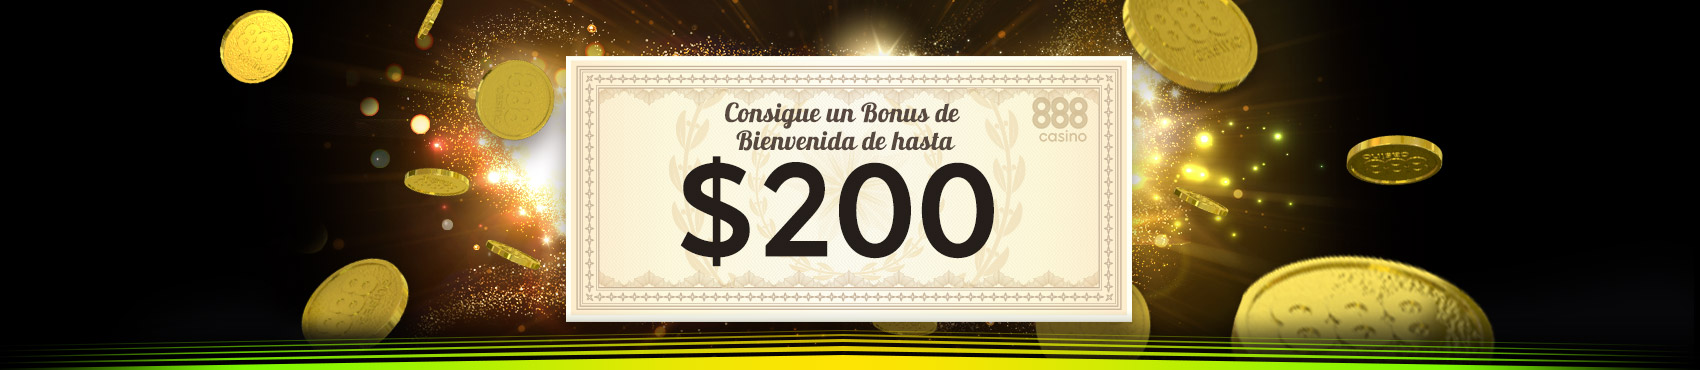 Bono bienvenida 888 casino $200